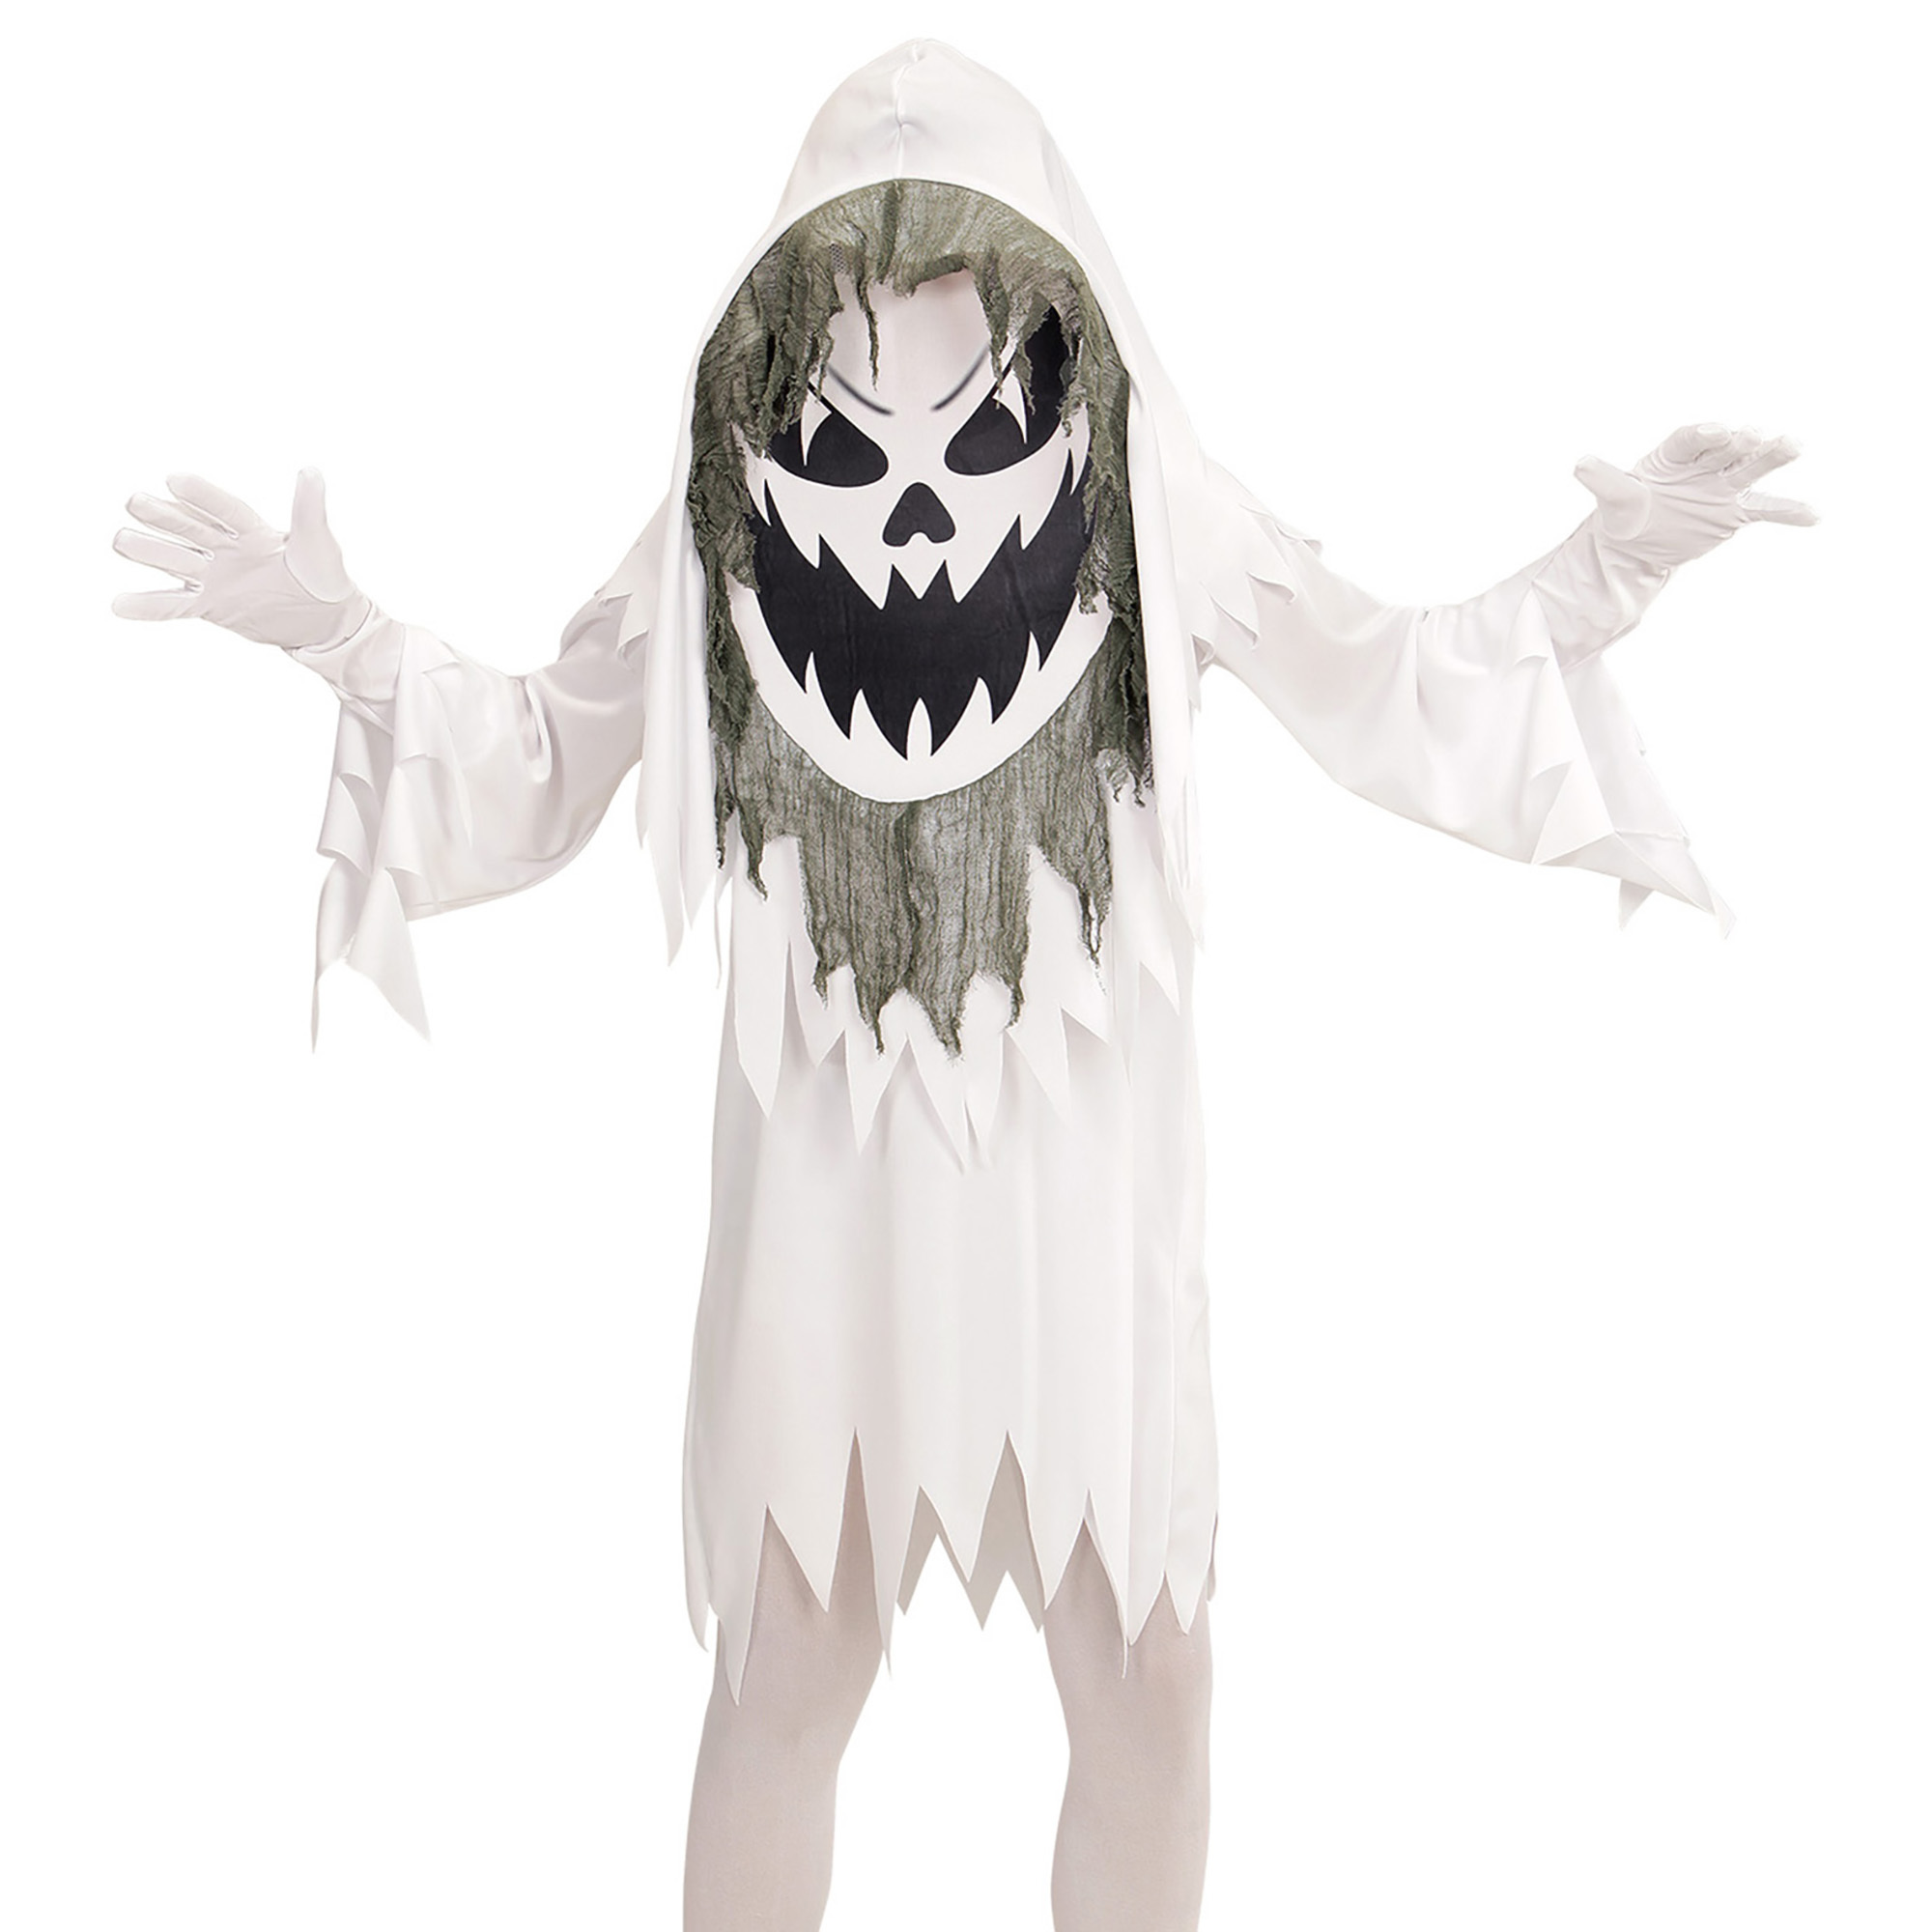 Super grappig spook kostuum met oversized masker kind